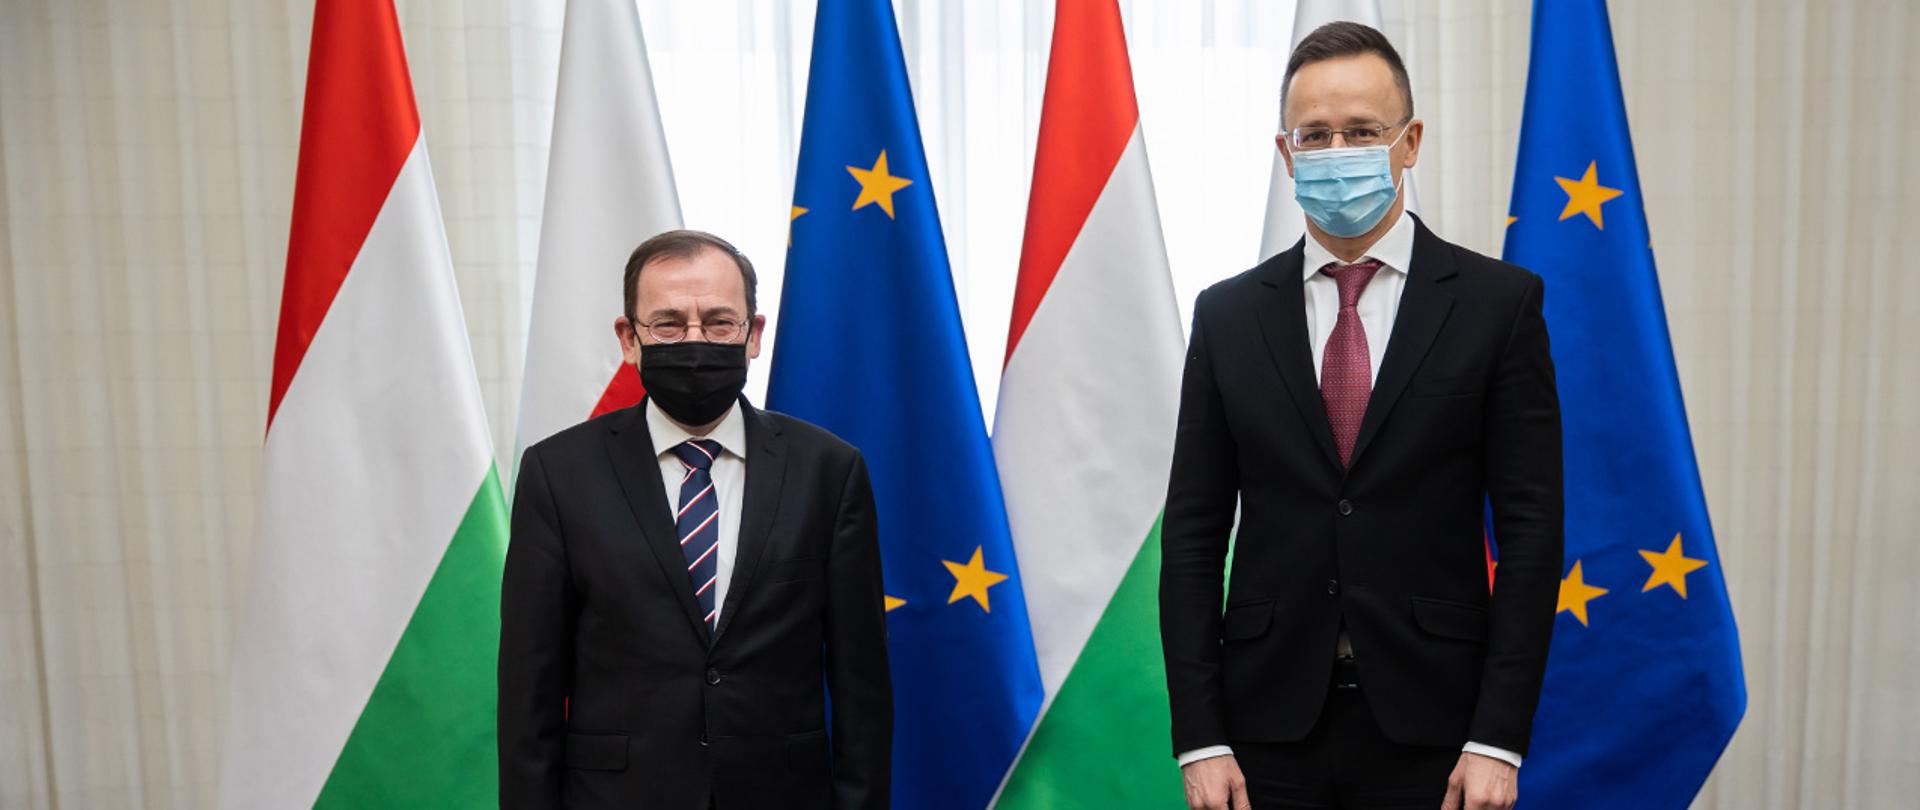 Na zdjęciu widać ministra Mariusza Kamińskiego i ministra spraw zagranicznych i handlu Węgier Pétera Szijjártó pozujących do zdjęcia na tle flag Polski, Węgier i UE.